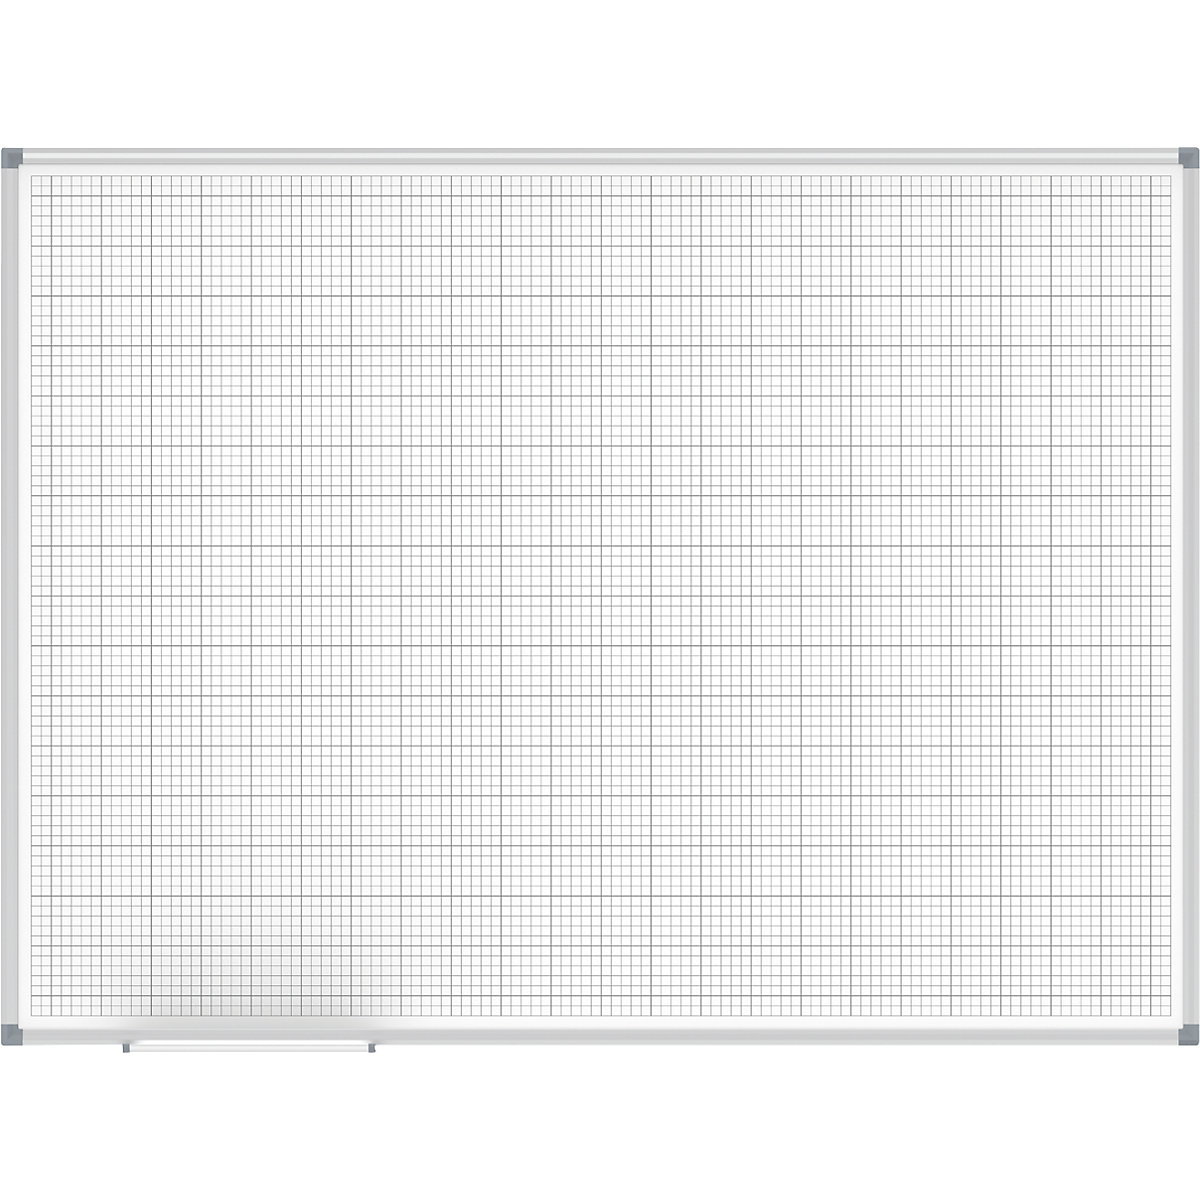 Tableau quadrillé MAULstandard, blanc – MAUL, quadrillage 10 x 10 / 50 x 50 mm, l x h 1200 x 900 mm-4